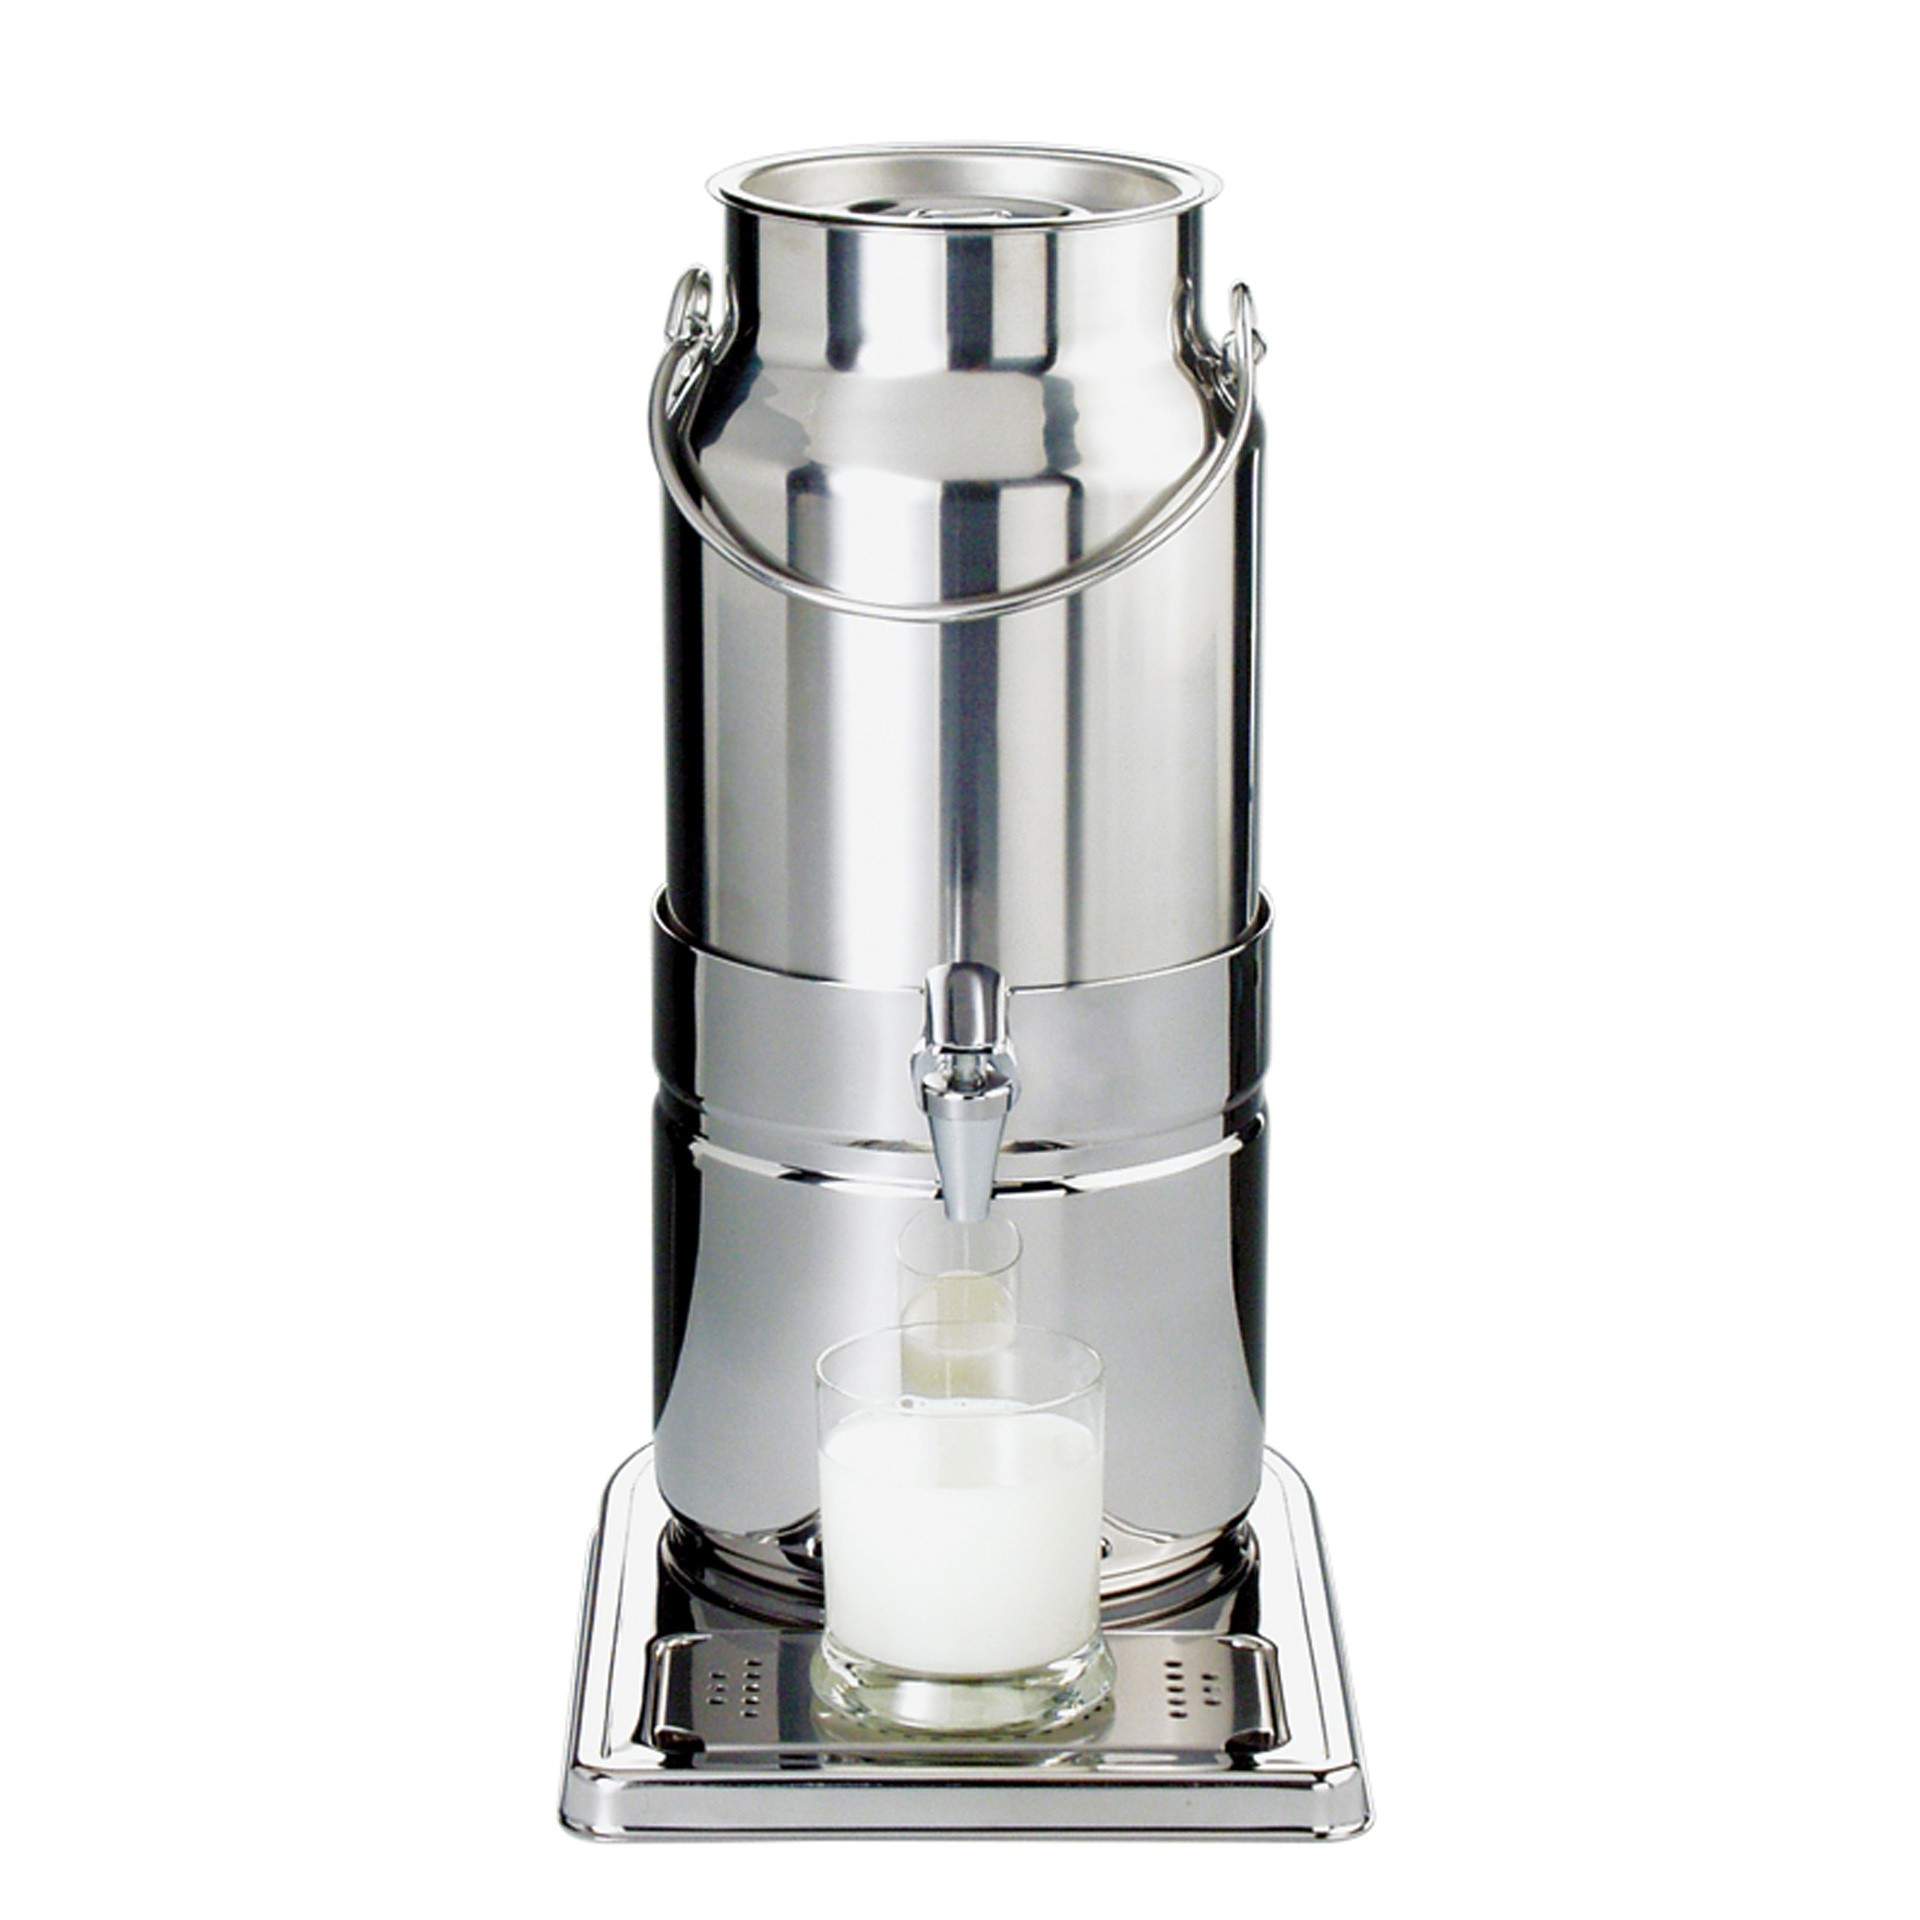 Milchkanne - mit Henkel - Serie Top Fresh - hochglanzpoliert - Abm. 23 x 35 x 45 cm - Inhalt 5,0 l - Edelstahl - 10750-B